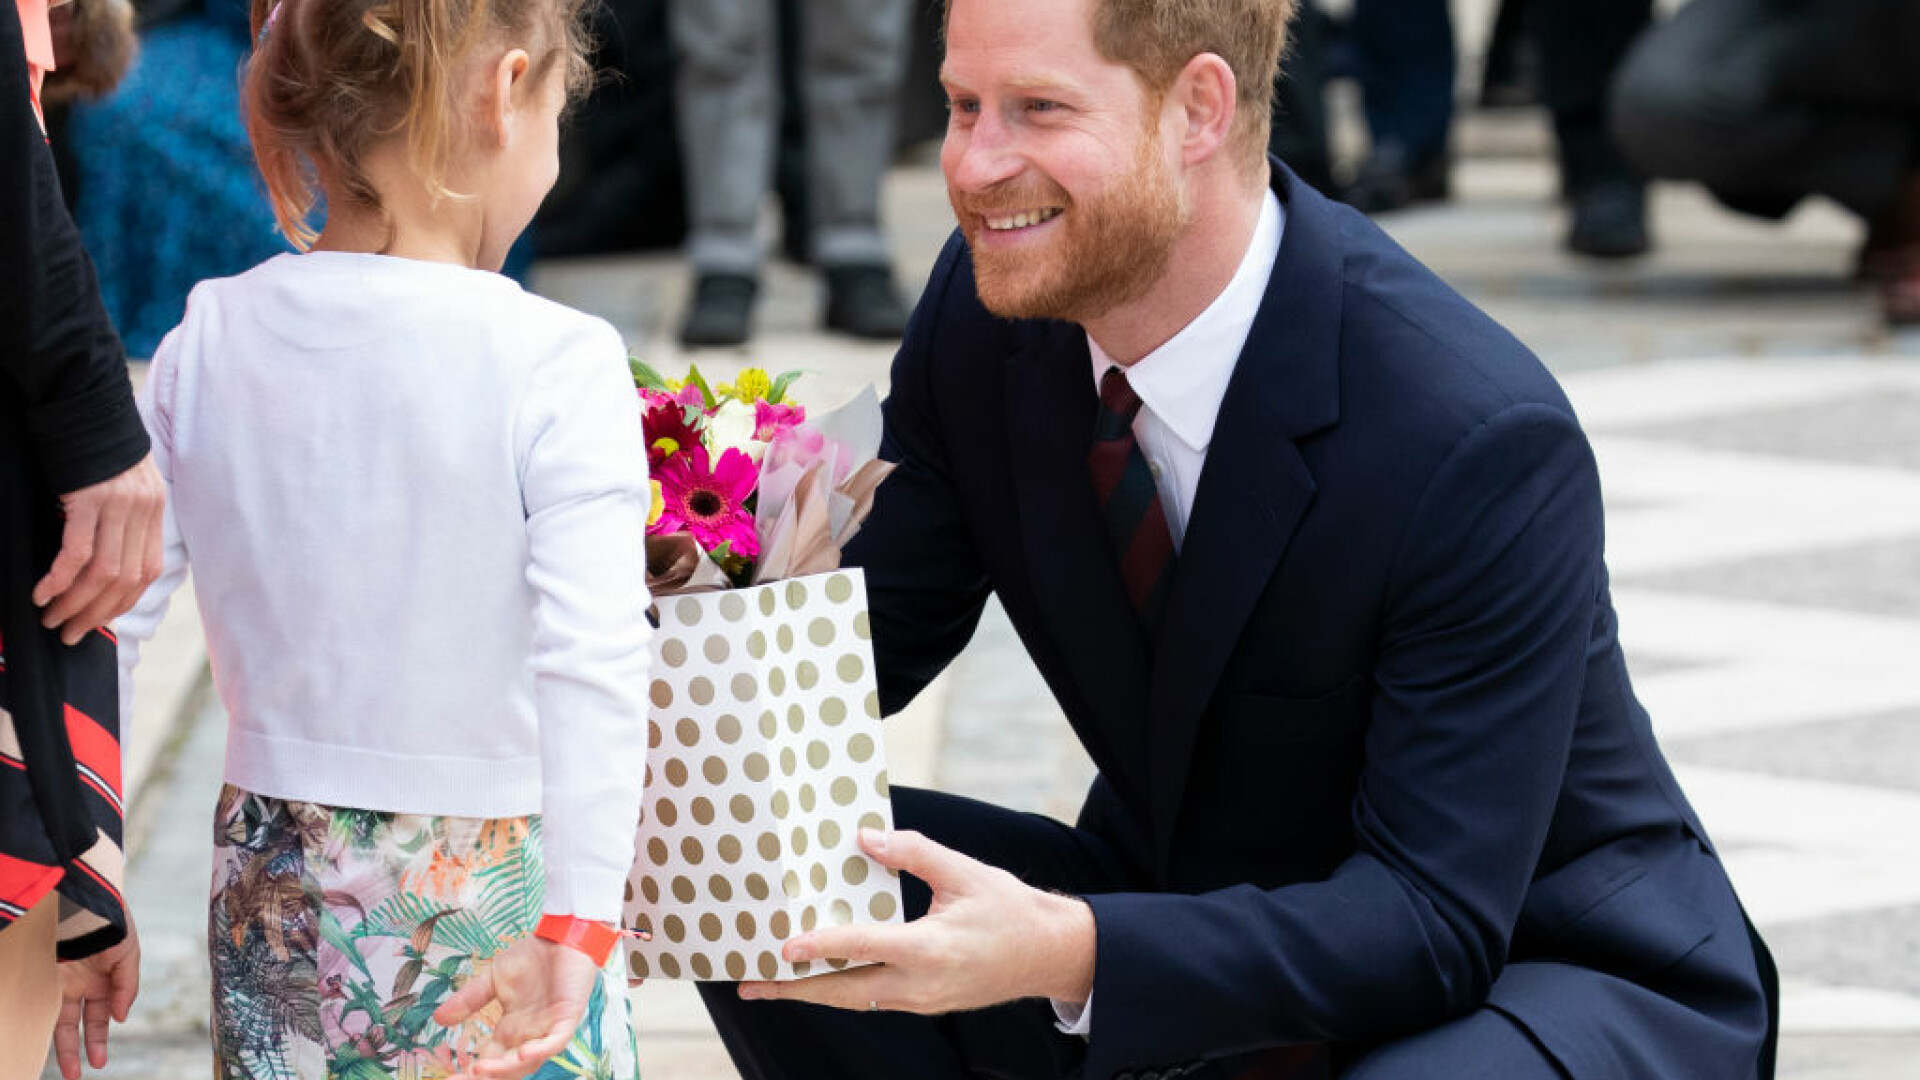 Prințul Harry a primit un buchet de flori de la o fetiță, la un eveniment caritabil din Londra